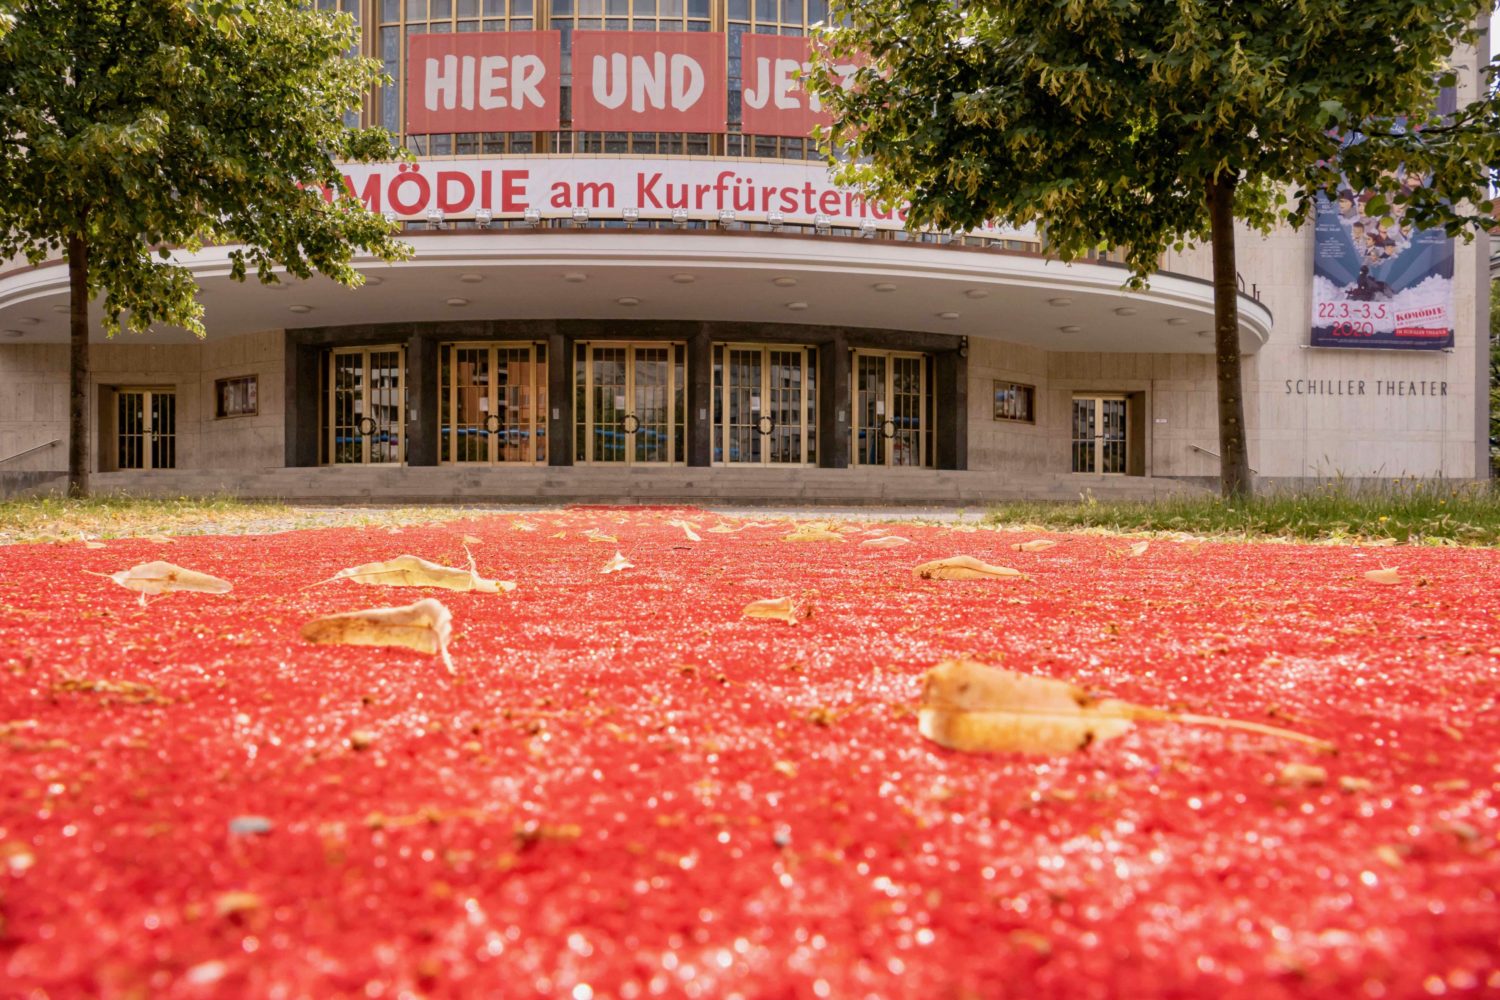 Die Komödie am Kurfürstendamm im Schiller Theater. Das Haus beteiligt sich am "Nieamnd kommt"-Festival. Foto: Imago Images / Stefan Zeitz